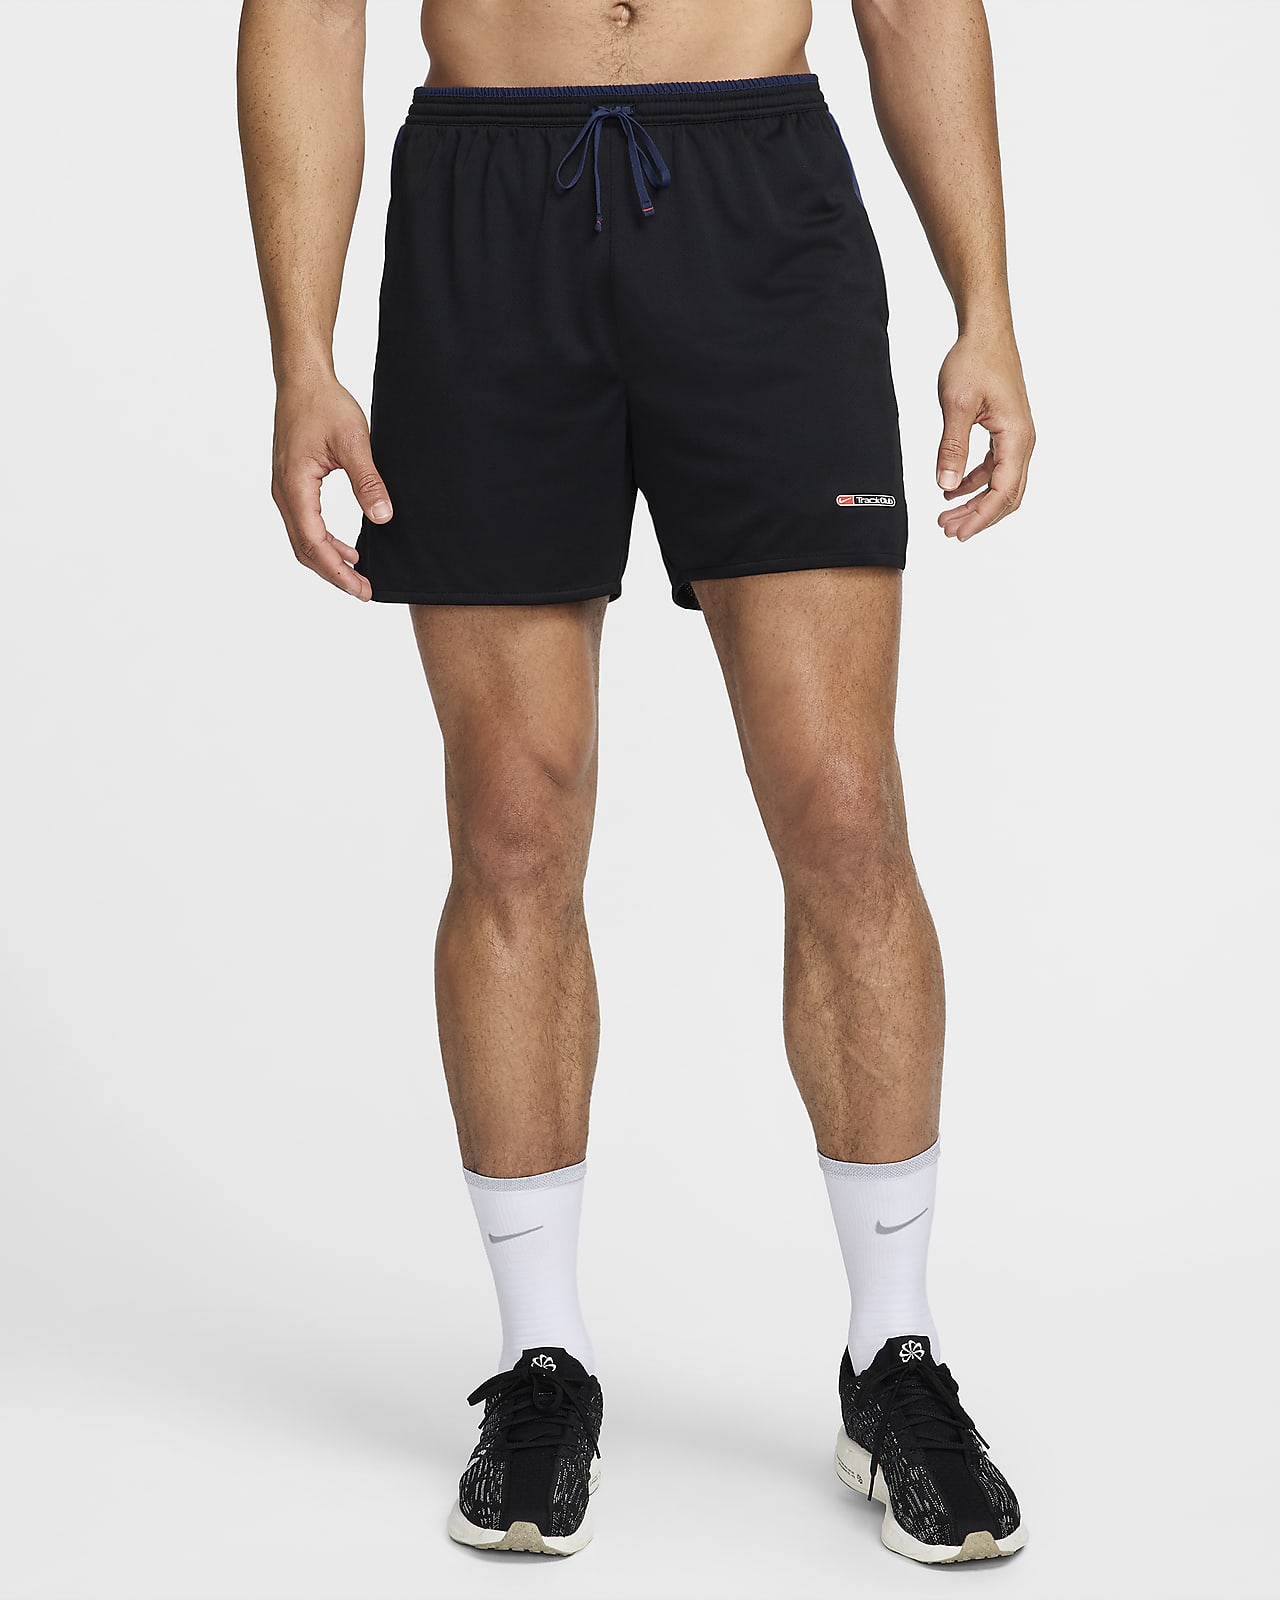 Short de running avec sous-short intégré 13 cm Dri-FIT Nike Track Club pour homme